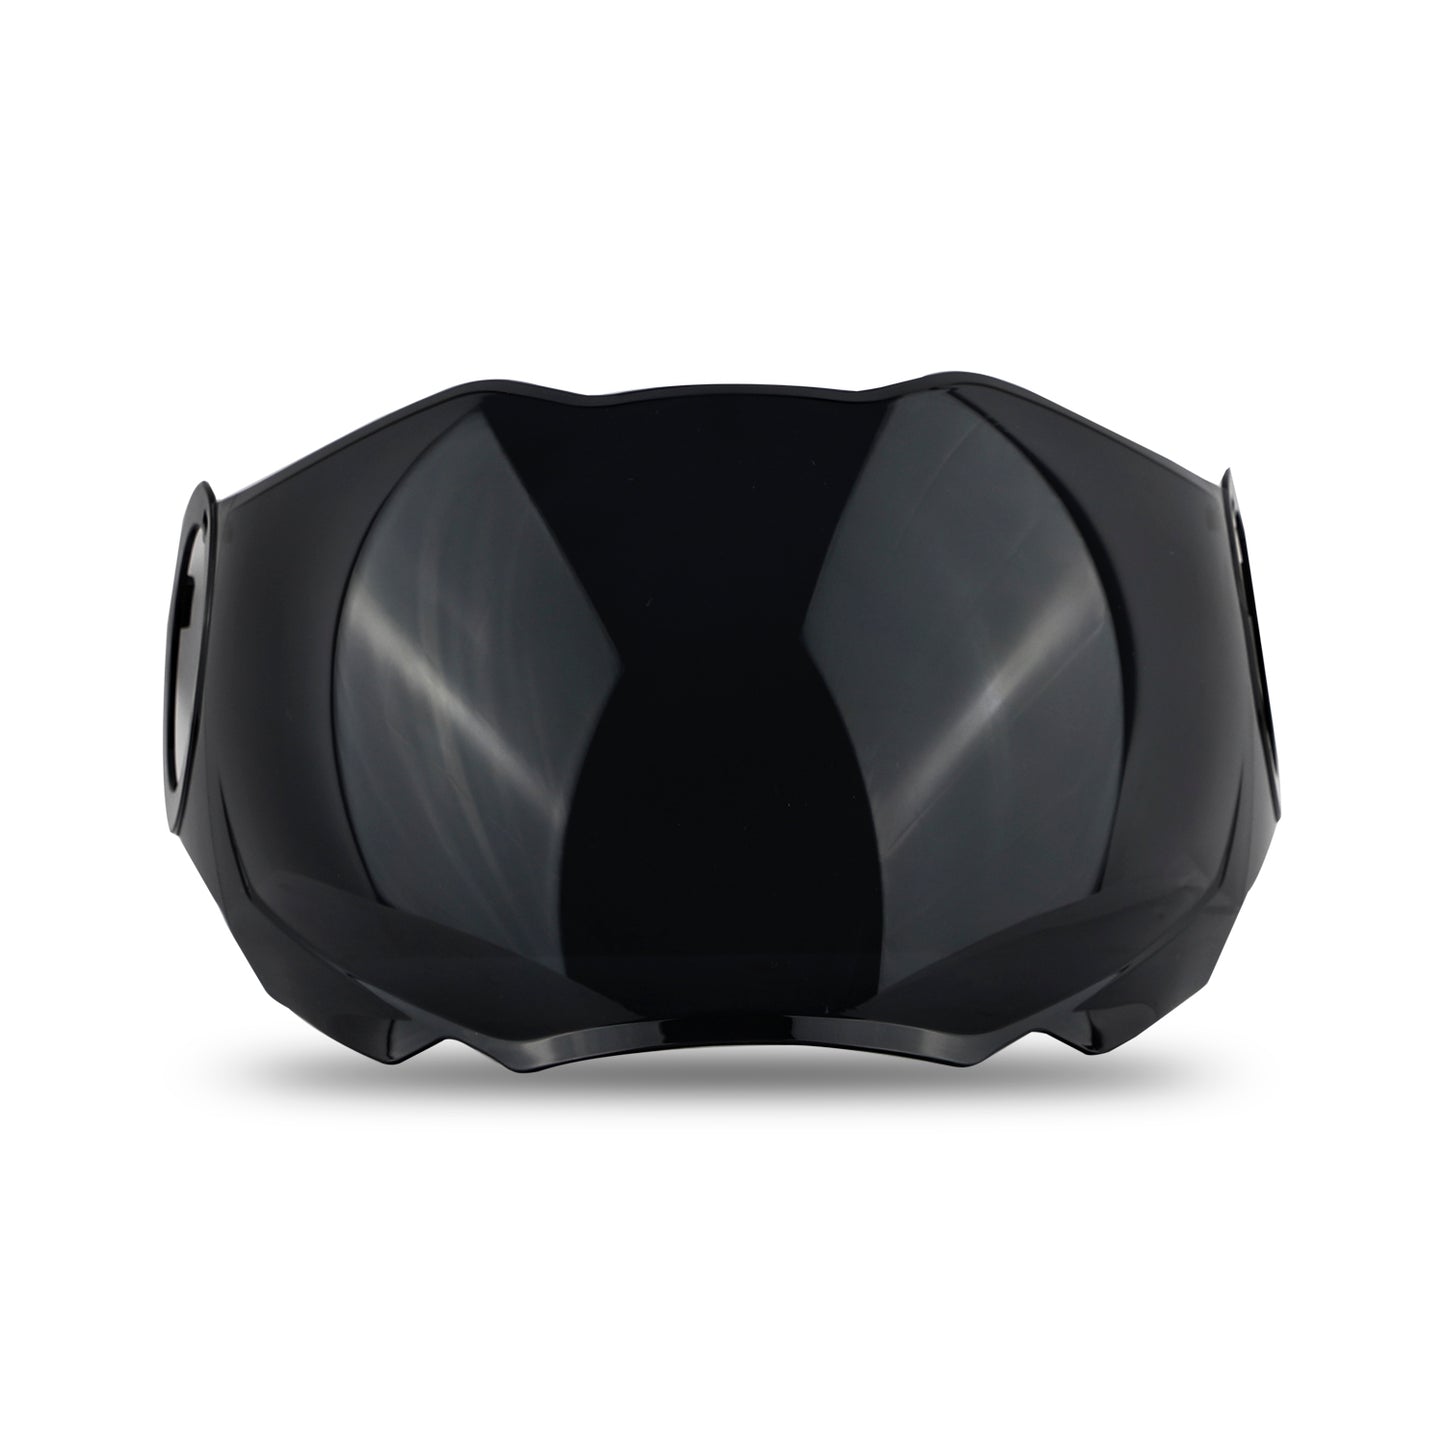 Steelbird SBH-31 Helmet Visor Compatible for All SBH-31 Model Helmets (Smoke Visor)